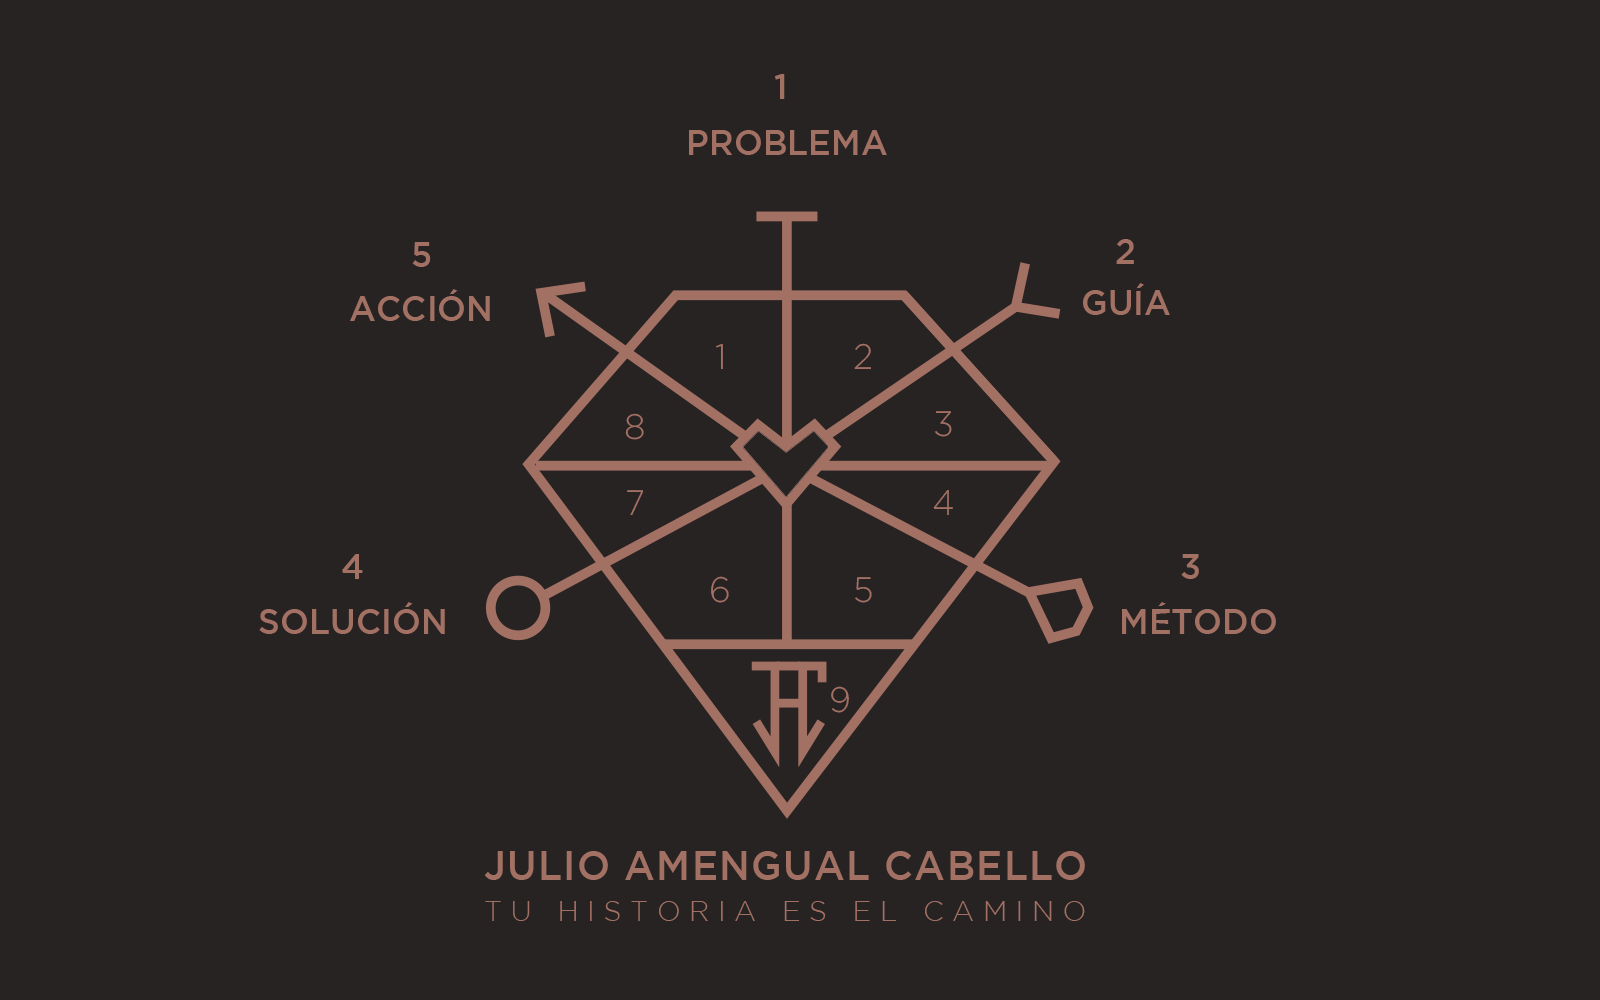 Logotipo desarrollado para explicar el modelo de coaching de Julio Amengual Cabello